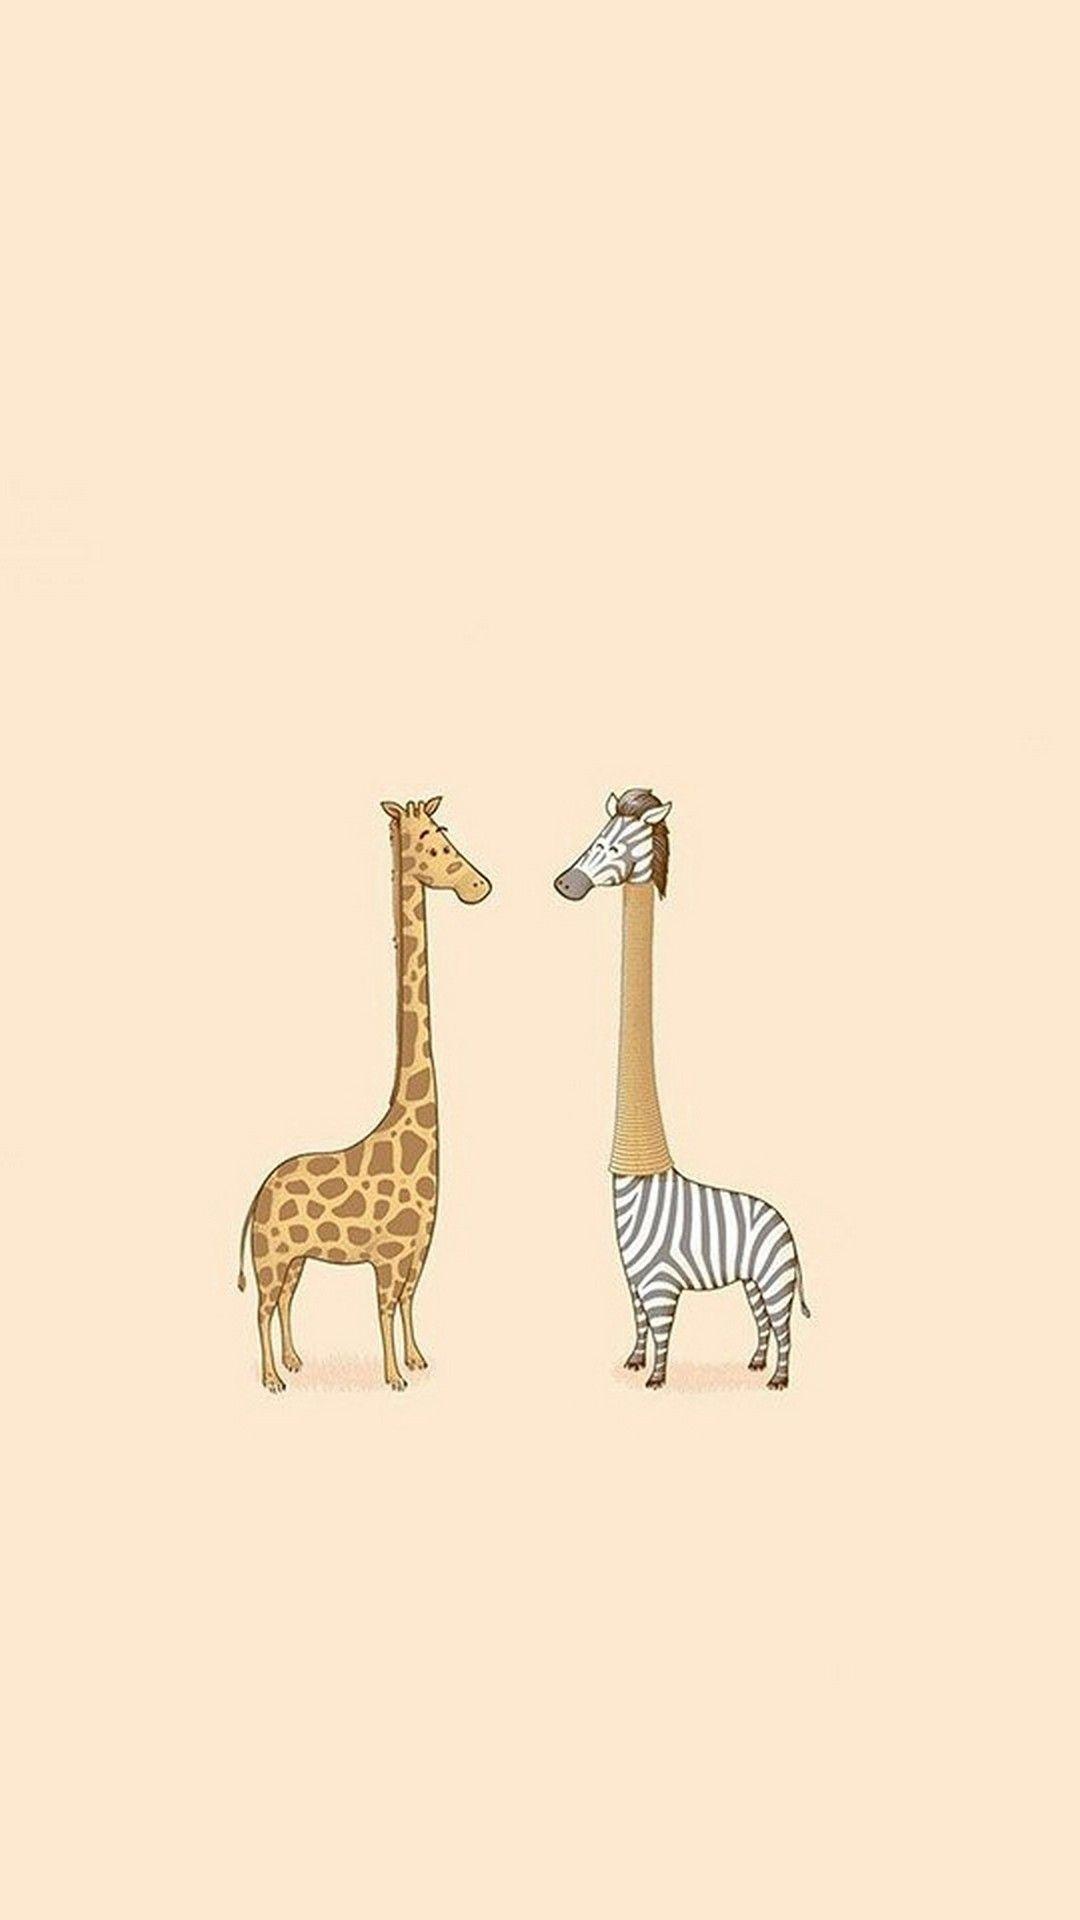 Cute Giraffe Wallpapers - Top Free Cute Giraffe Backgrounds ...